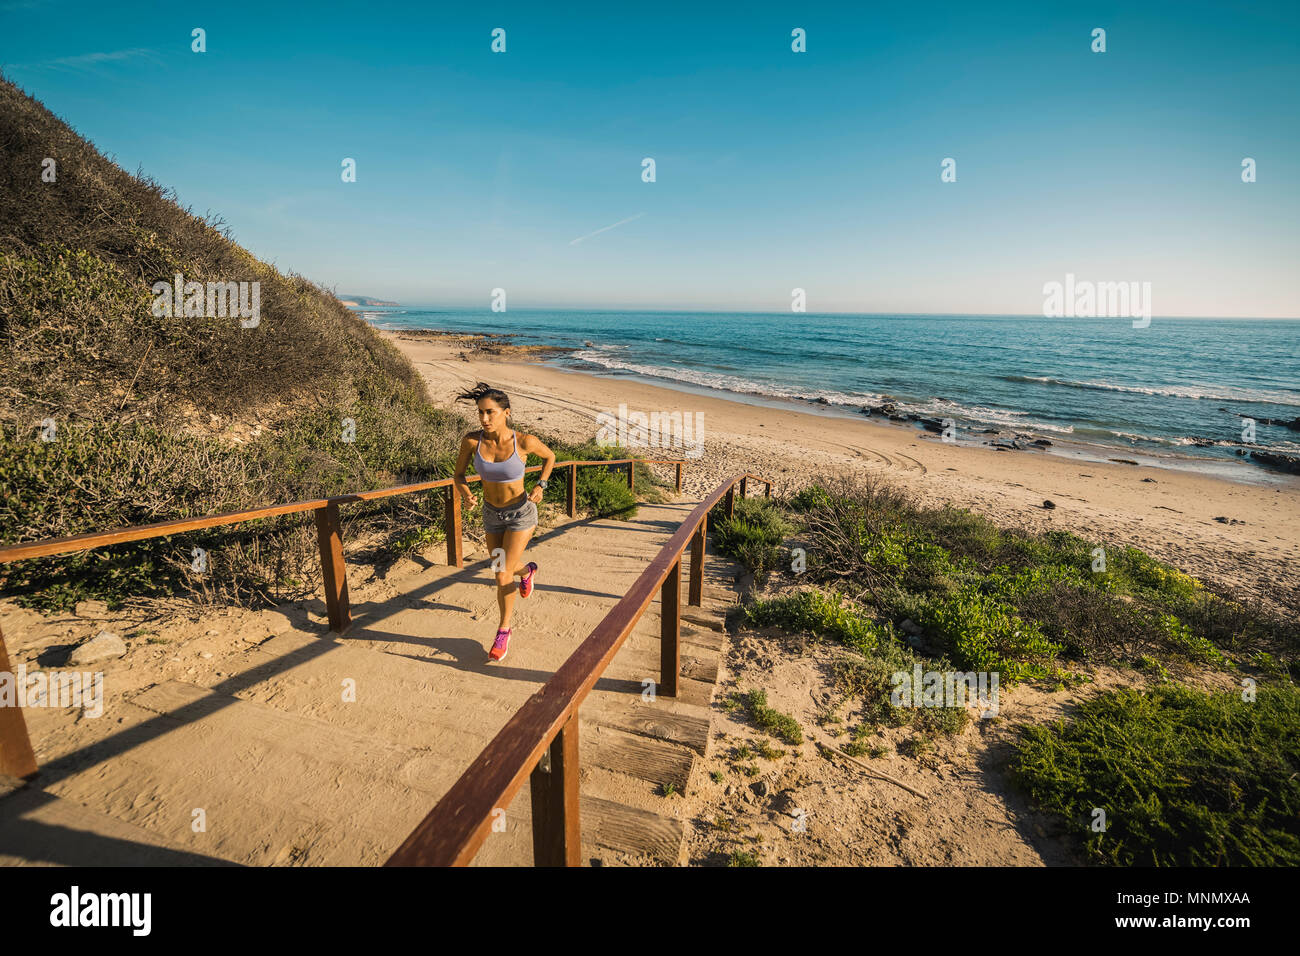 USA, California, Newport Beach, Woman running up stairs Stock Photo